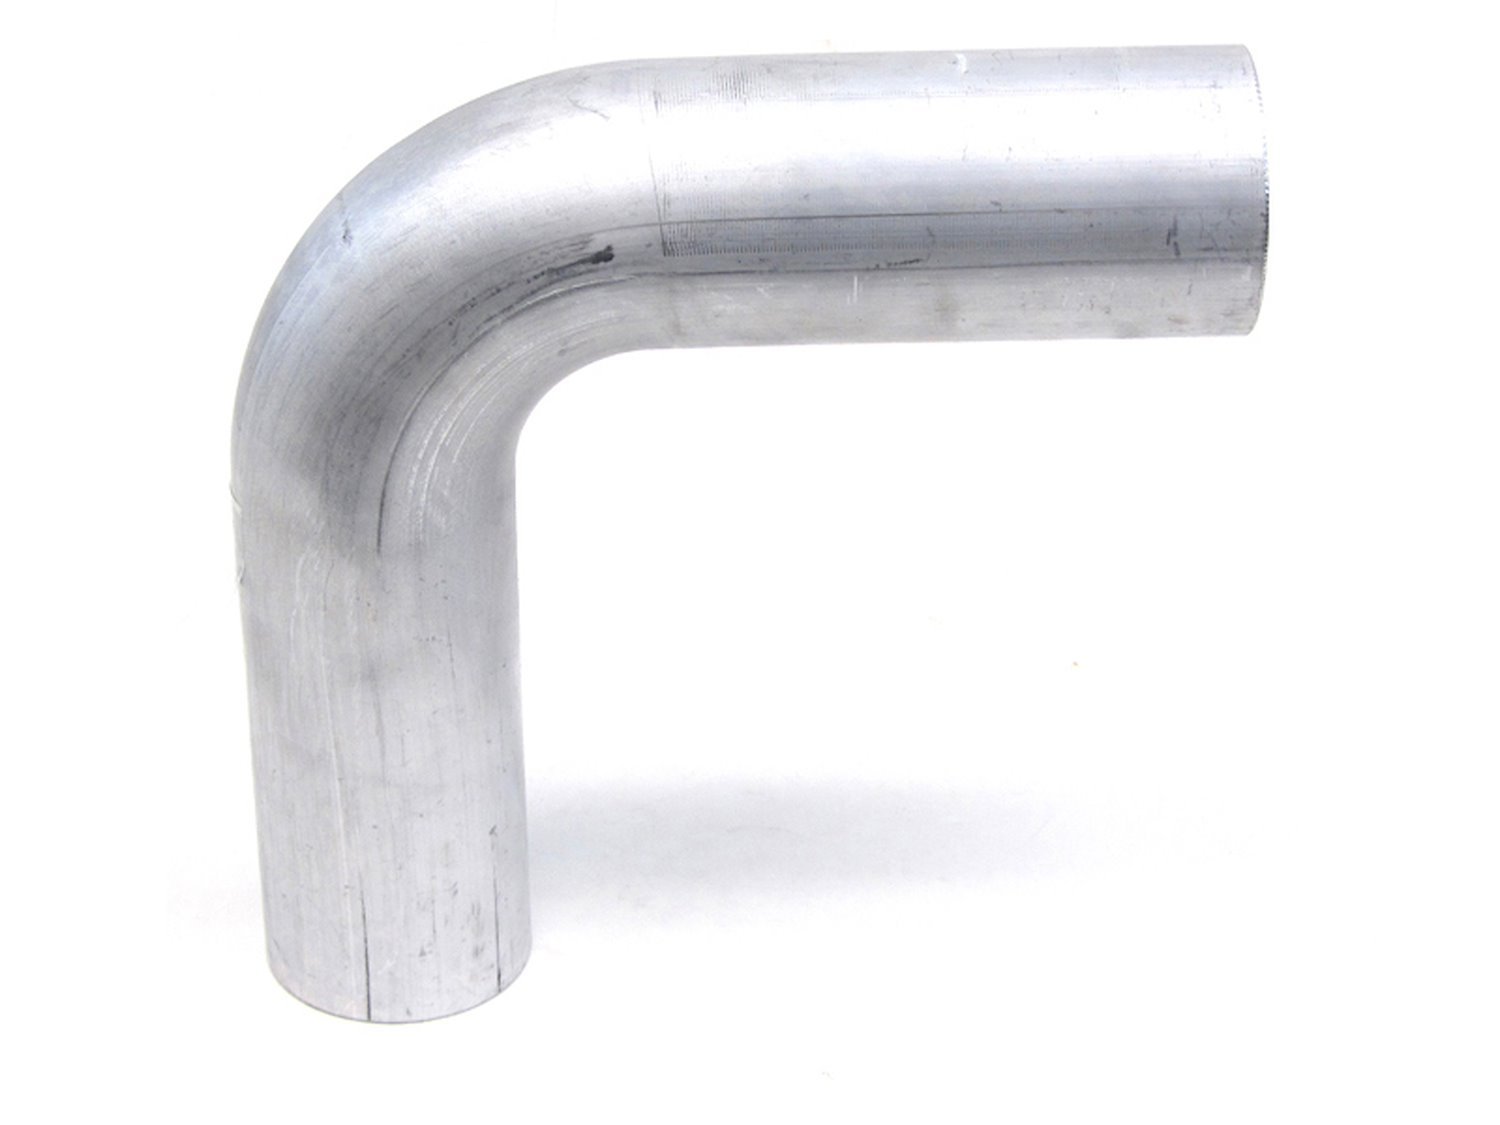 AT90-300-CLR-475 Aluminum Elbow Tube, 6061 Aluminum, 90-Degree Bend Elbow Tubing, 3 in. OD, Large Radius, 4-3/4 in. CLR